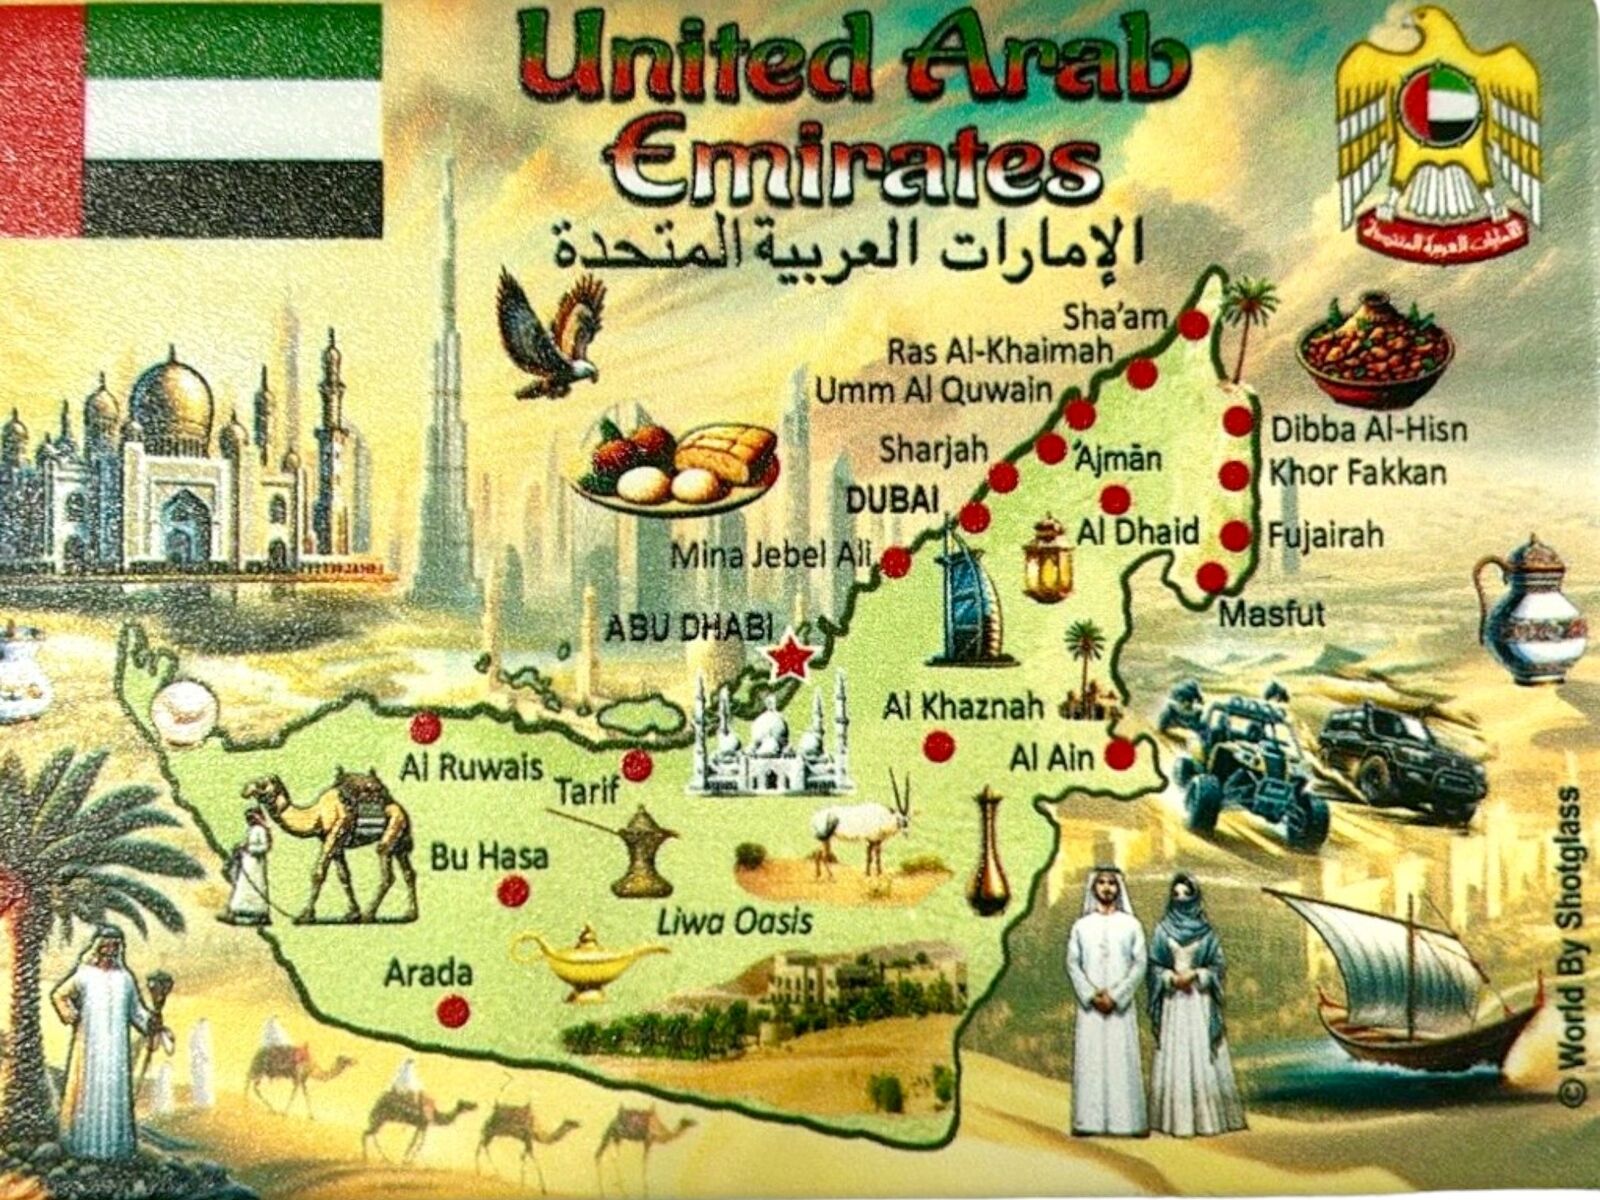 United Arab Emirates Graphic Map & Attractions Souvenir Fridge Magnet 2.5\